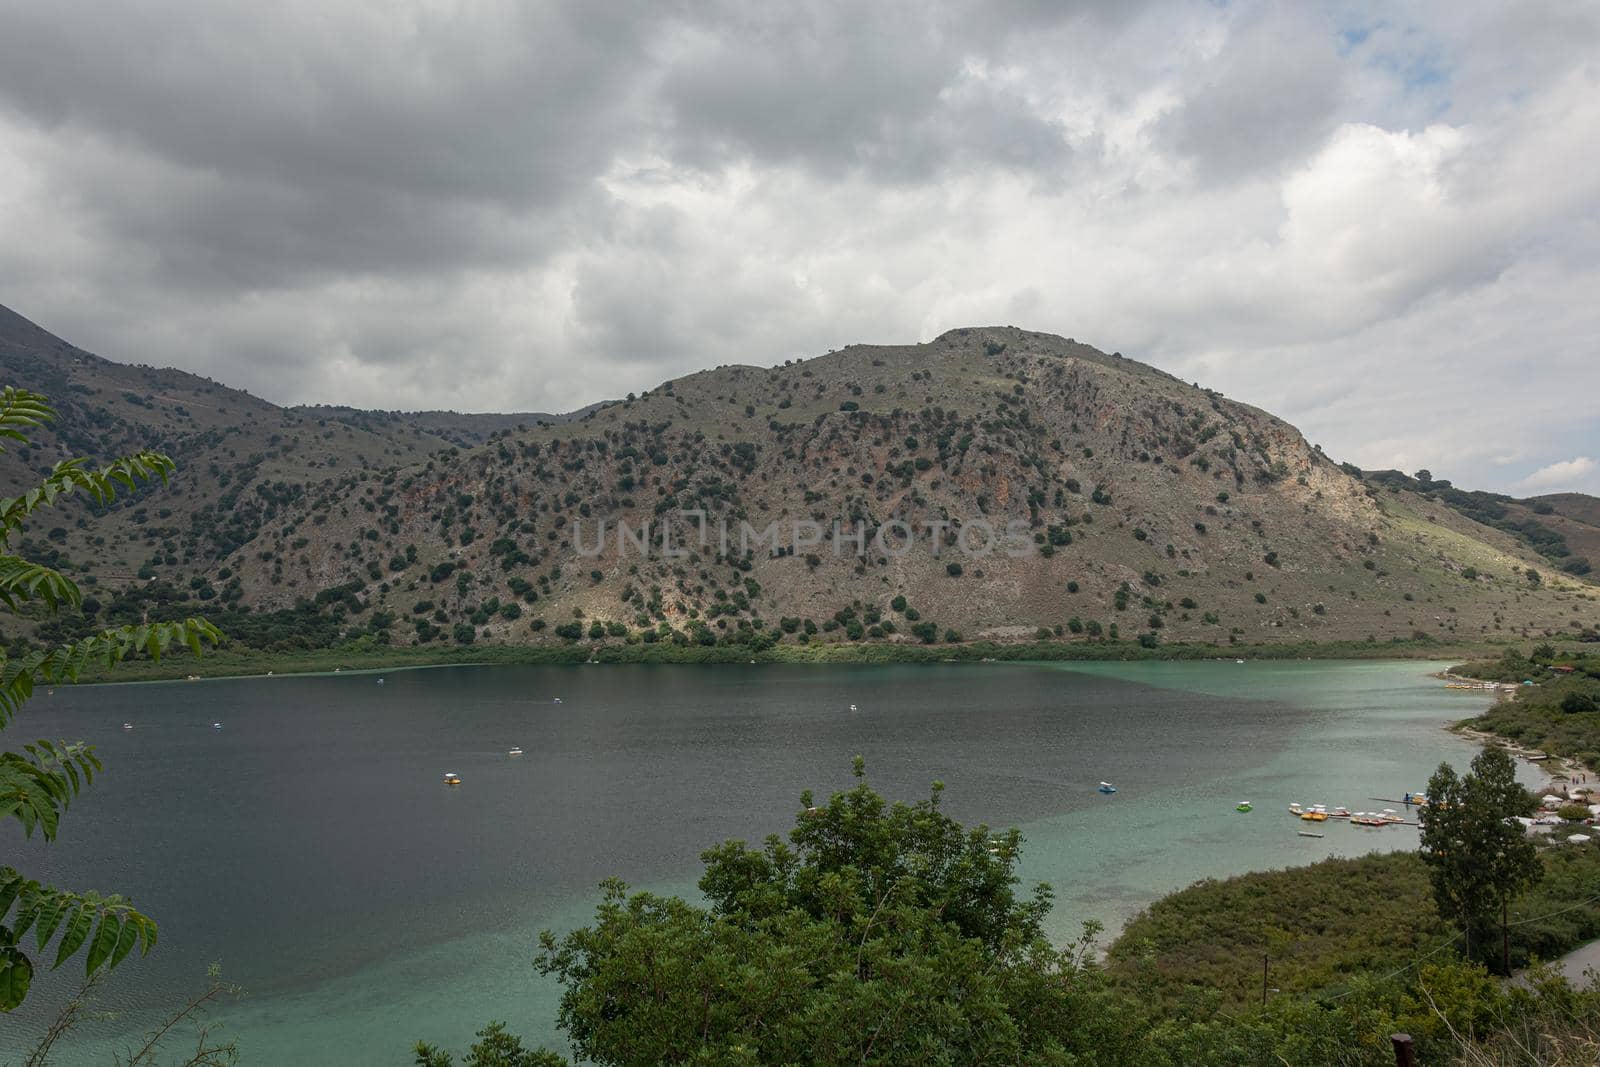 Lake Kournas in a mountainous area. Cloudy weather (Greece, Crete). Stock photo